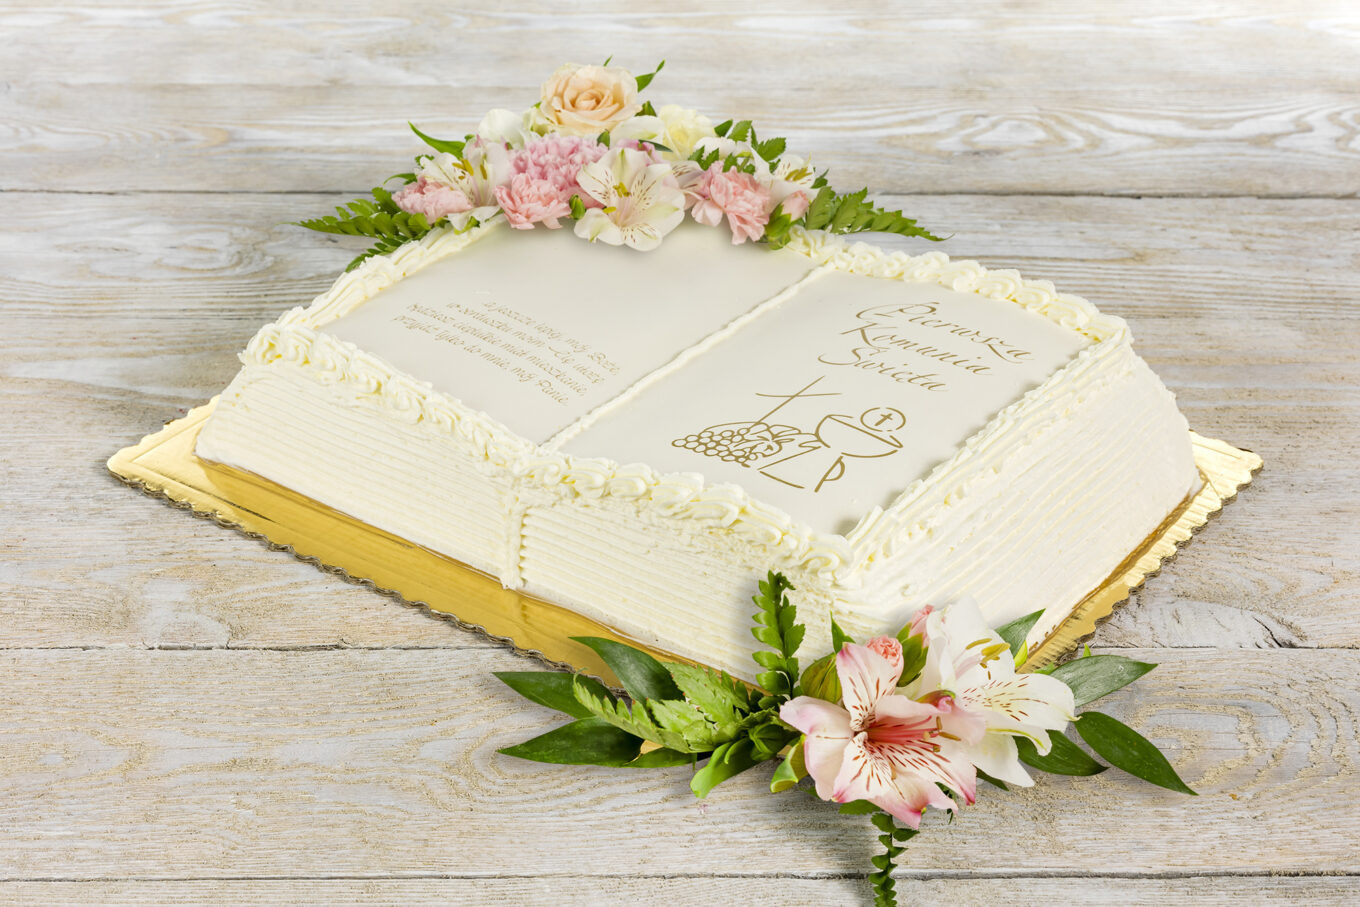 libro torta con fiori per la comunione Cukiernia Jacek Placek è sinonimo del gusto delle torte fatte in casa a base di prodotti naturali.